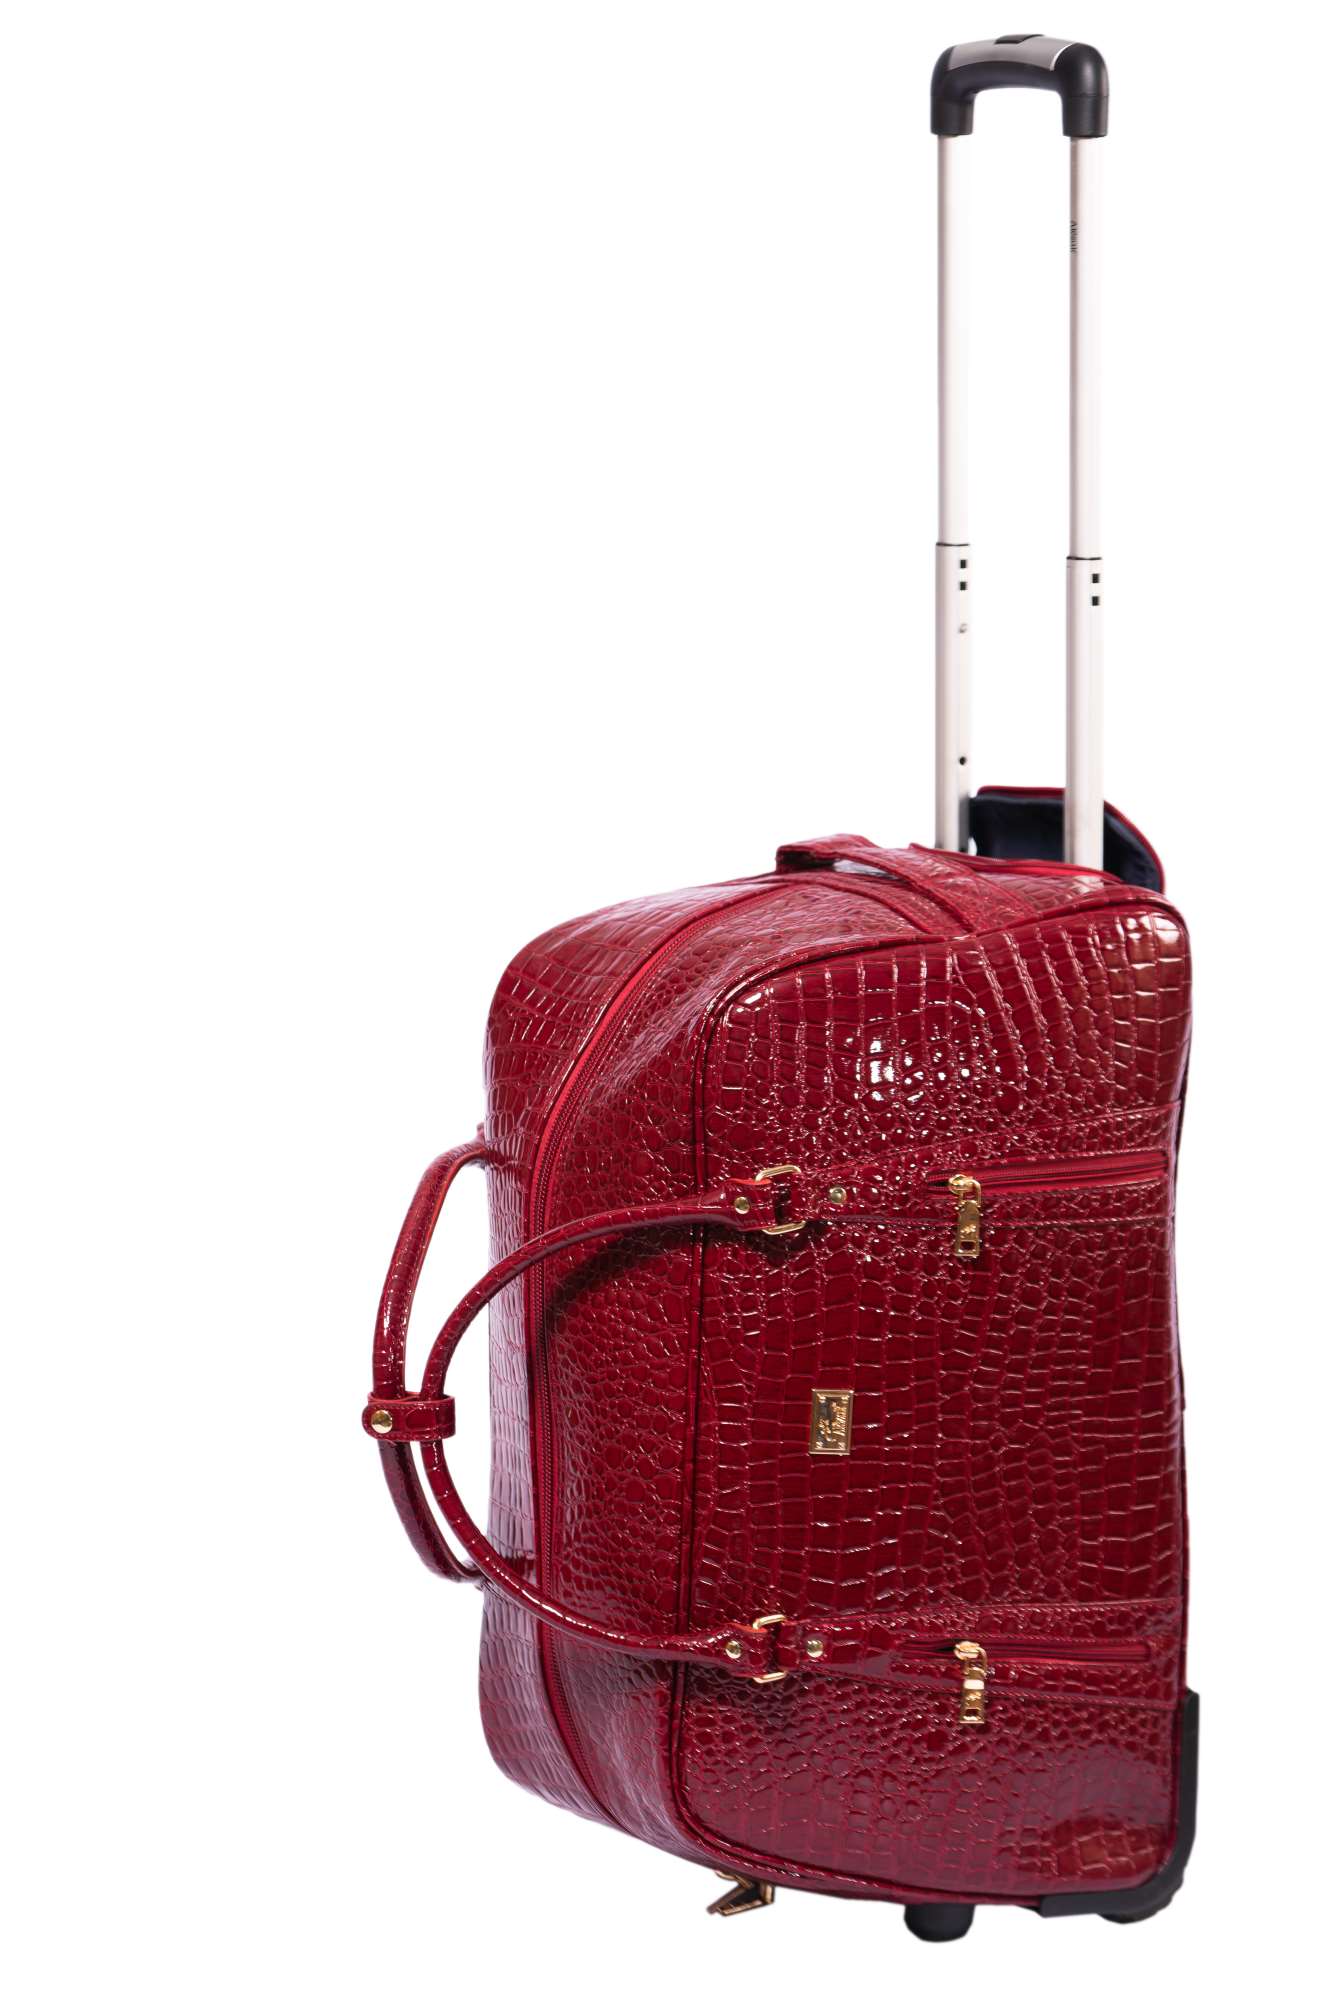 Alezar Carry-On Roller Bag Red 25"